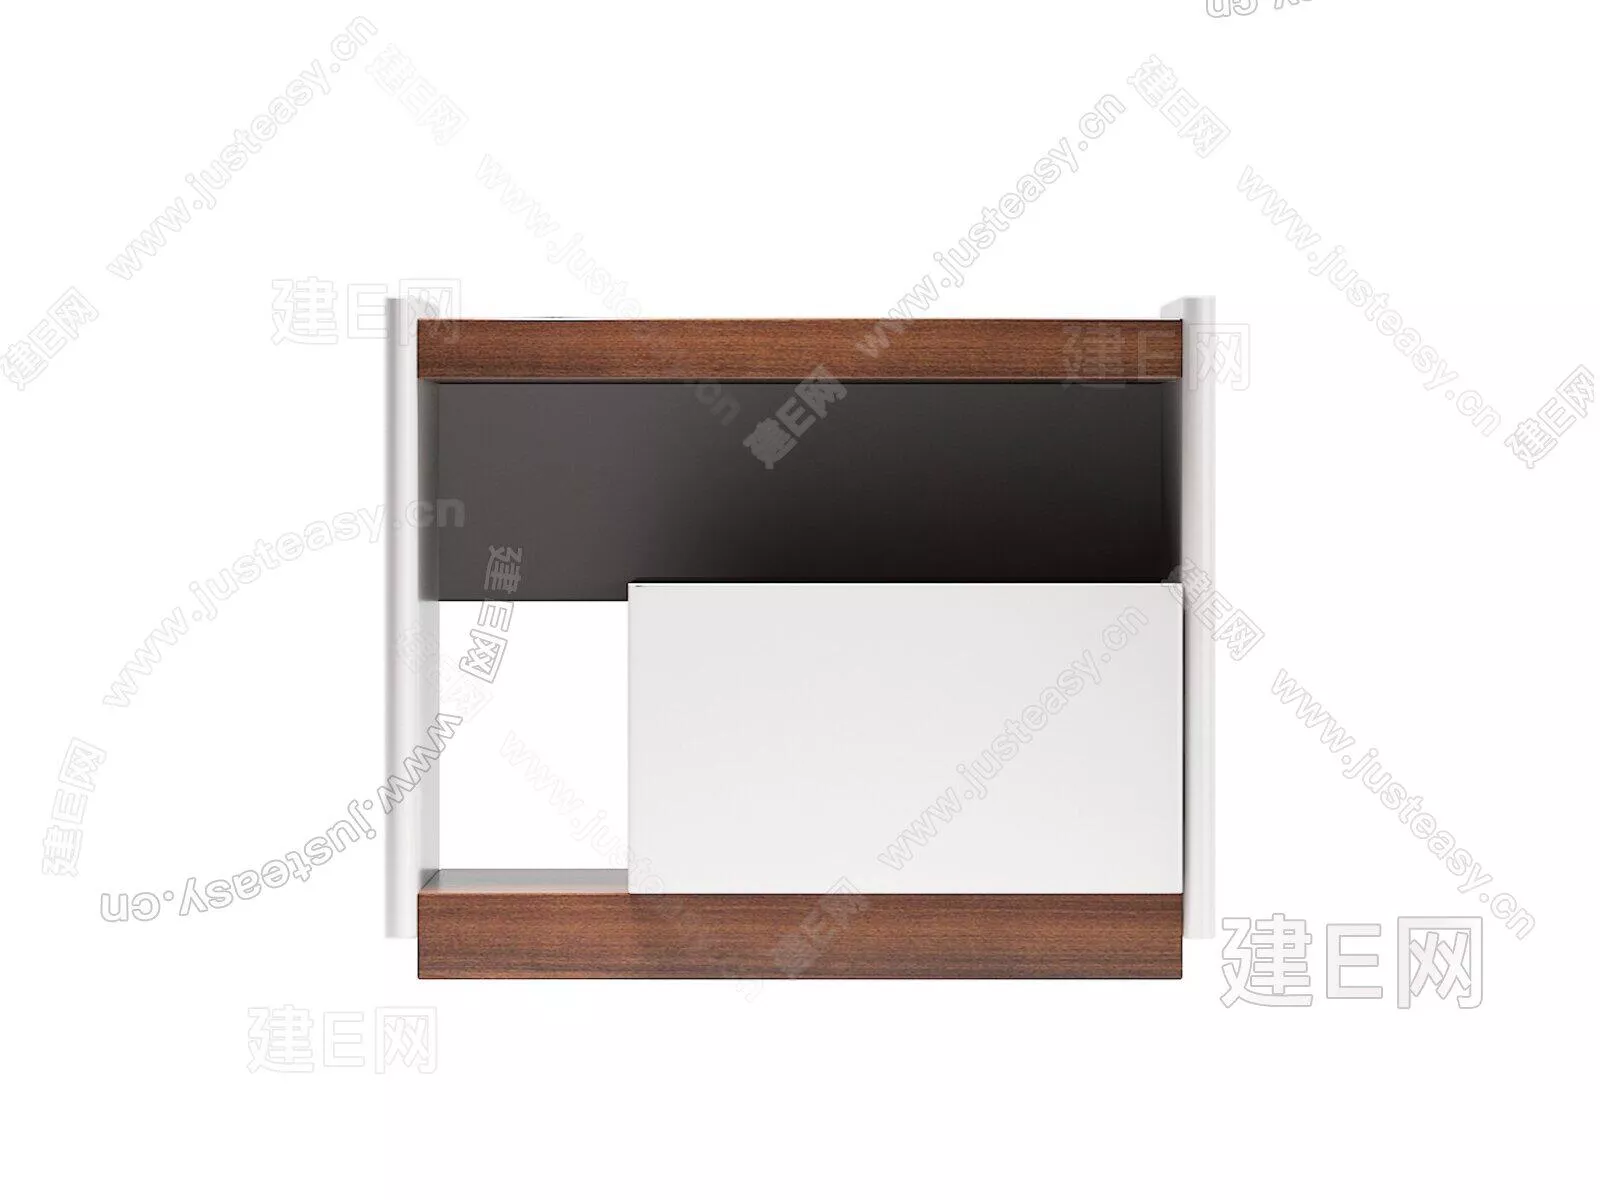 NORDIC BEDSIDE TABLE - SKETCHUP 3D MODEL - ENSCAPE - 104876134